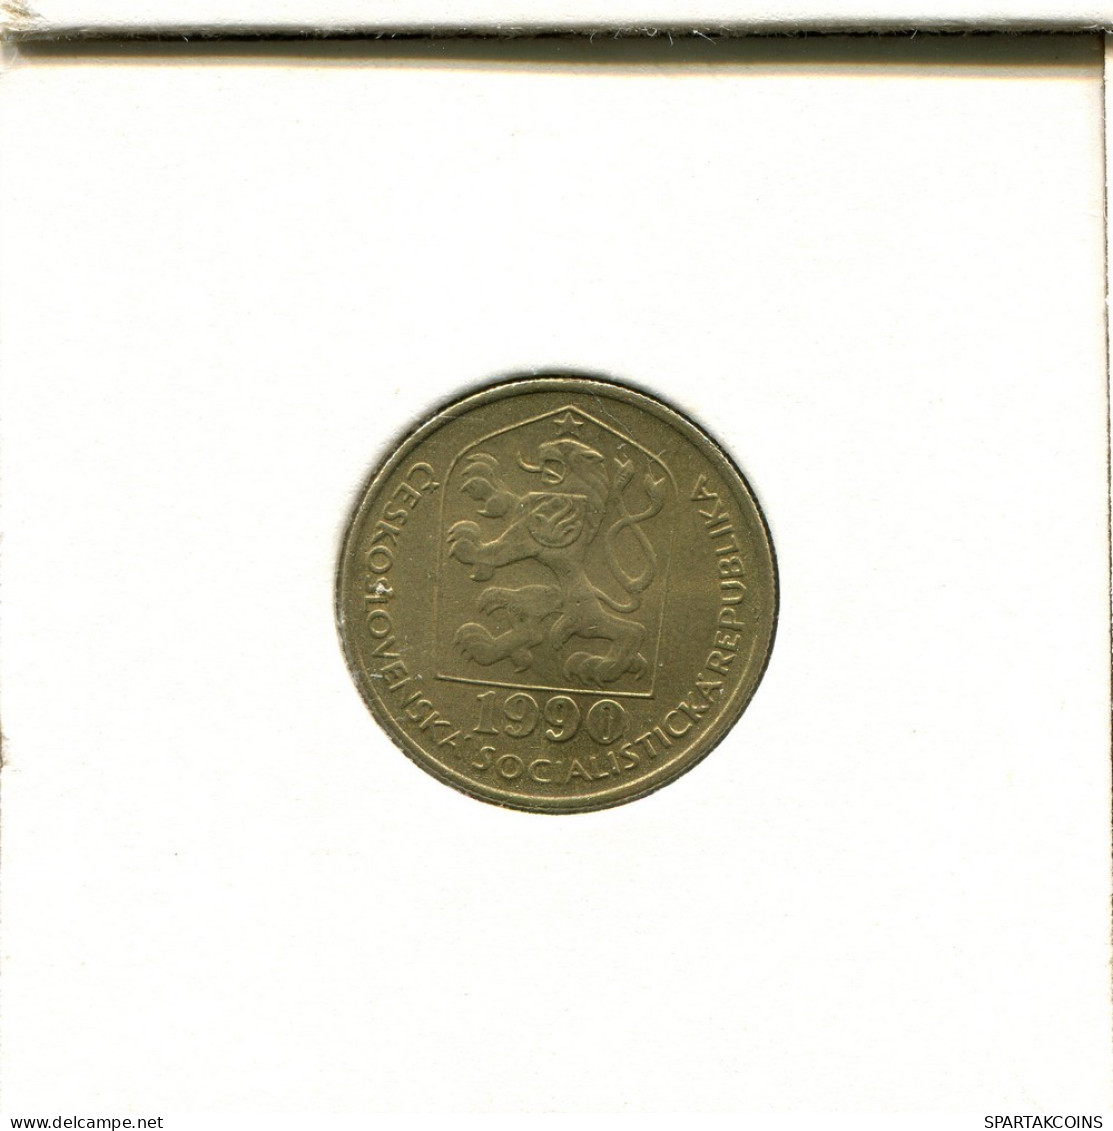 20 HALERU 1990 TSCHECHOSLOWAKEI CZECHOSLOWAKEI SLOVAKIA Münze #AS954.D.A - Tsjechoslowakije